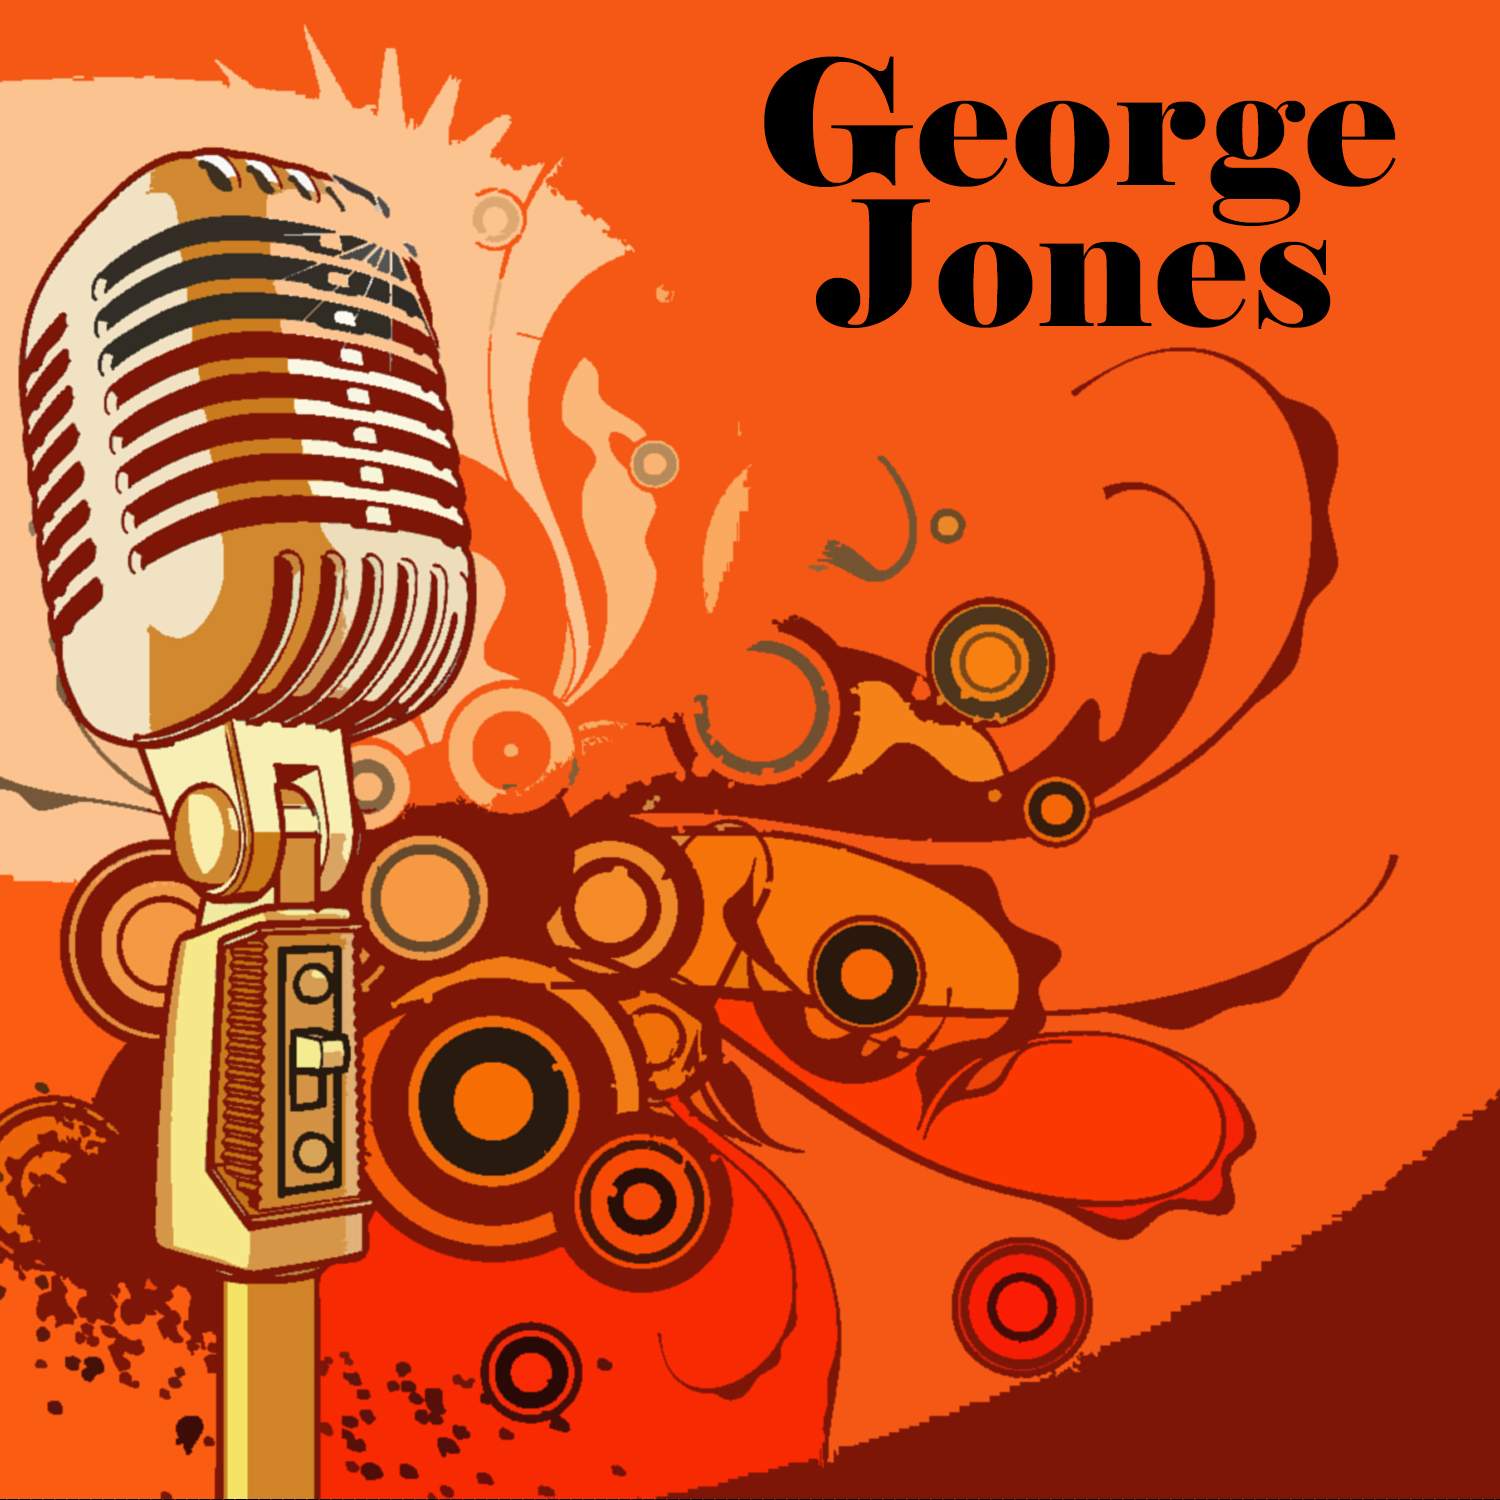 George Jones by George Jones